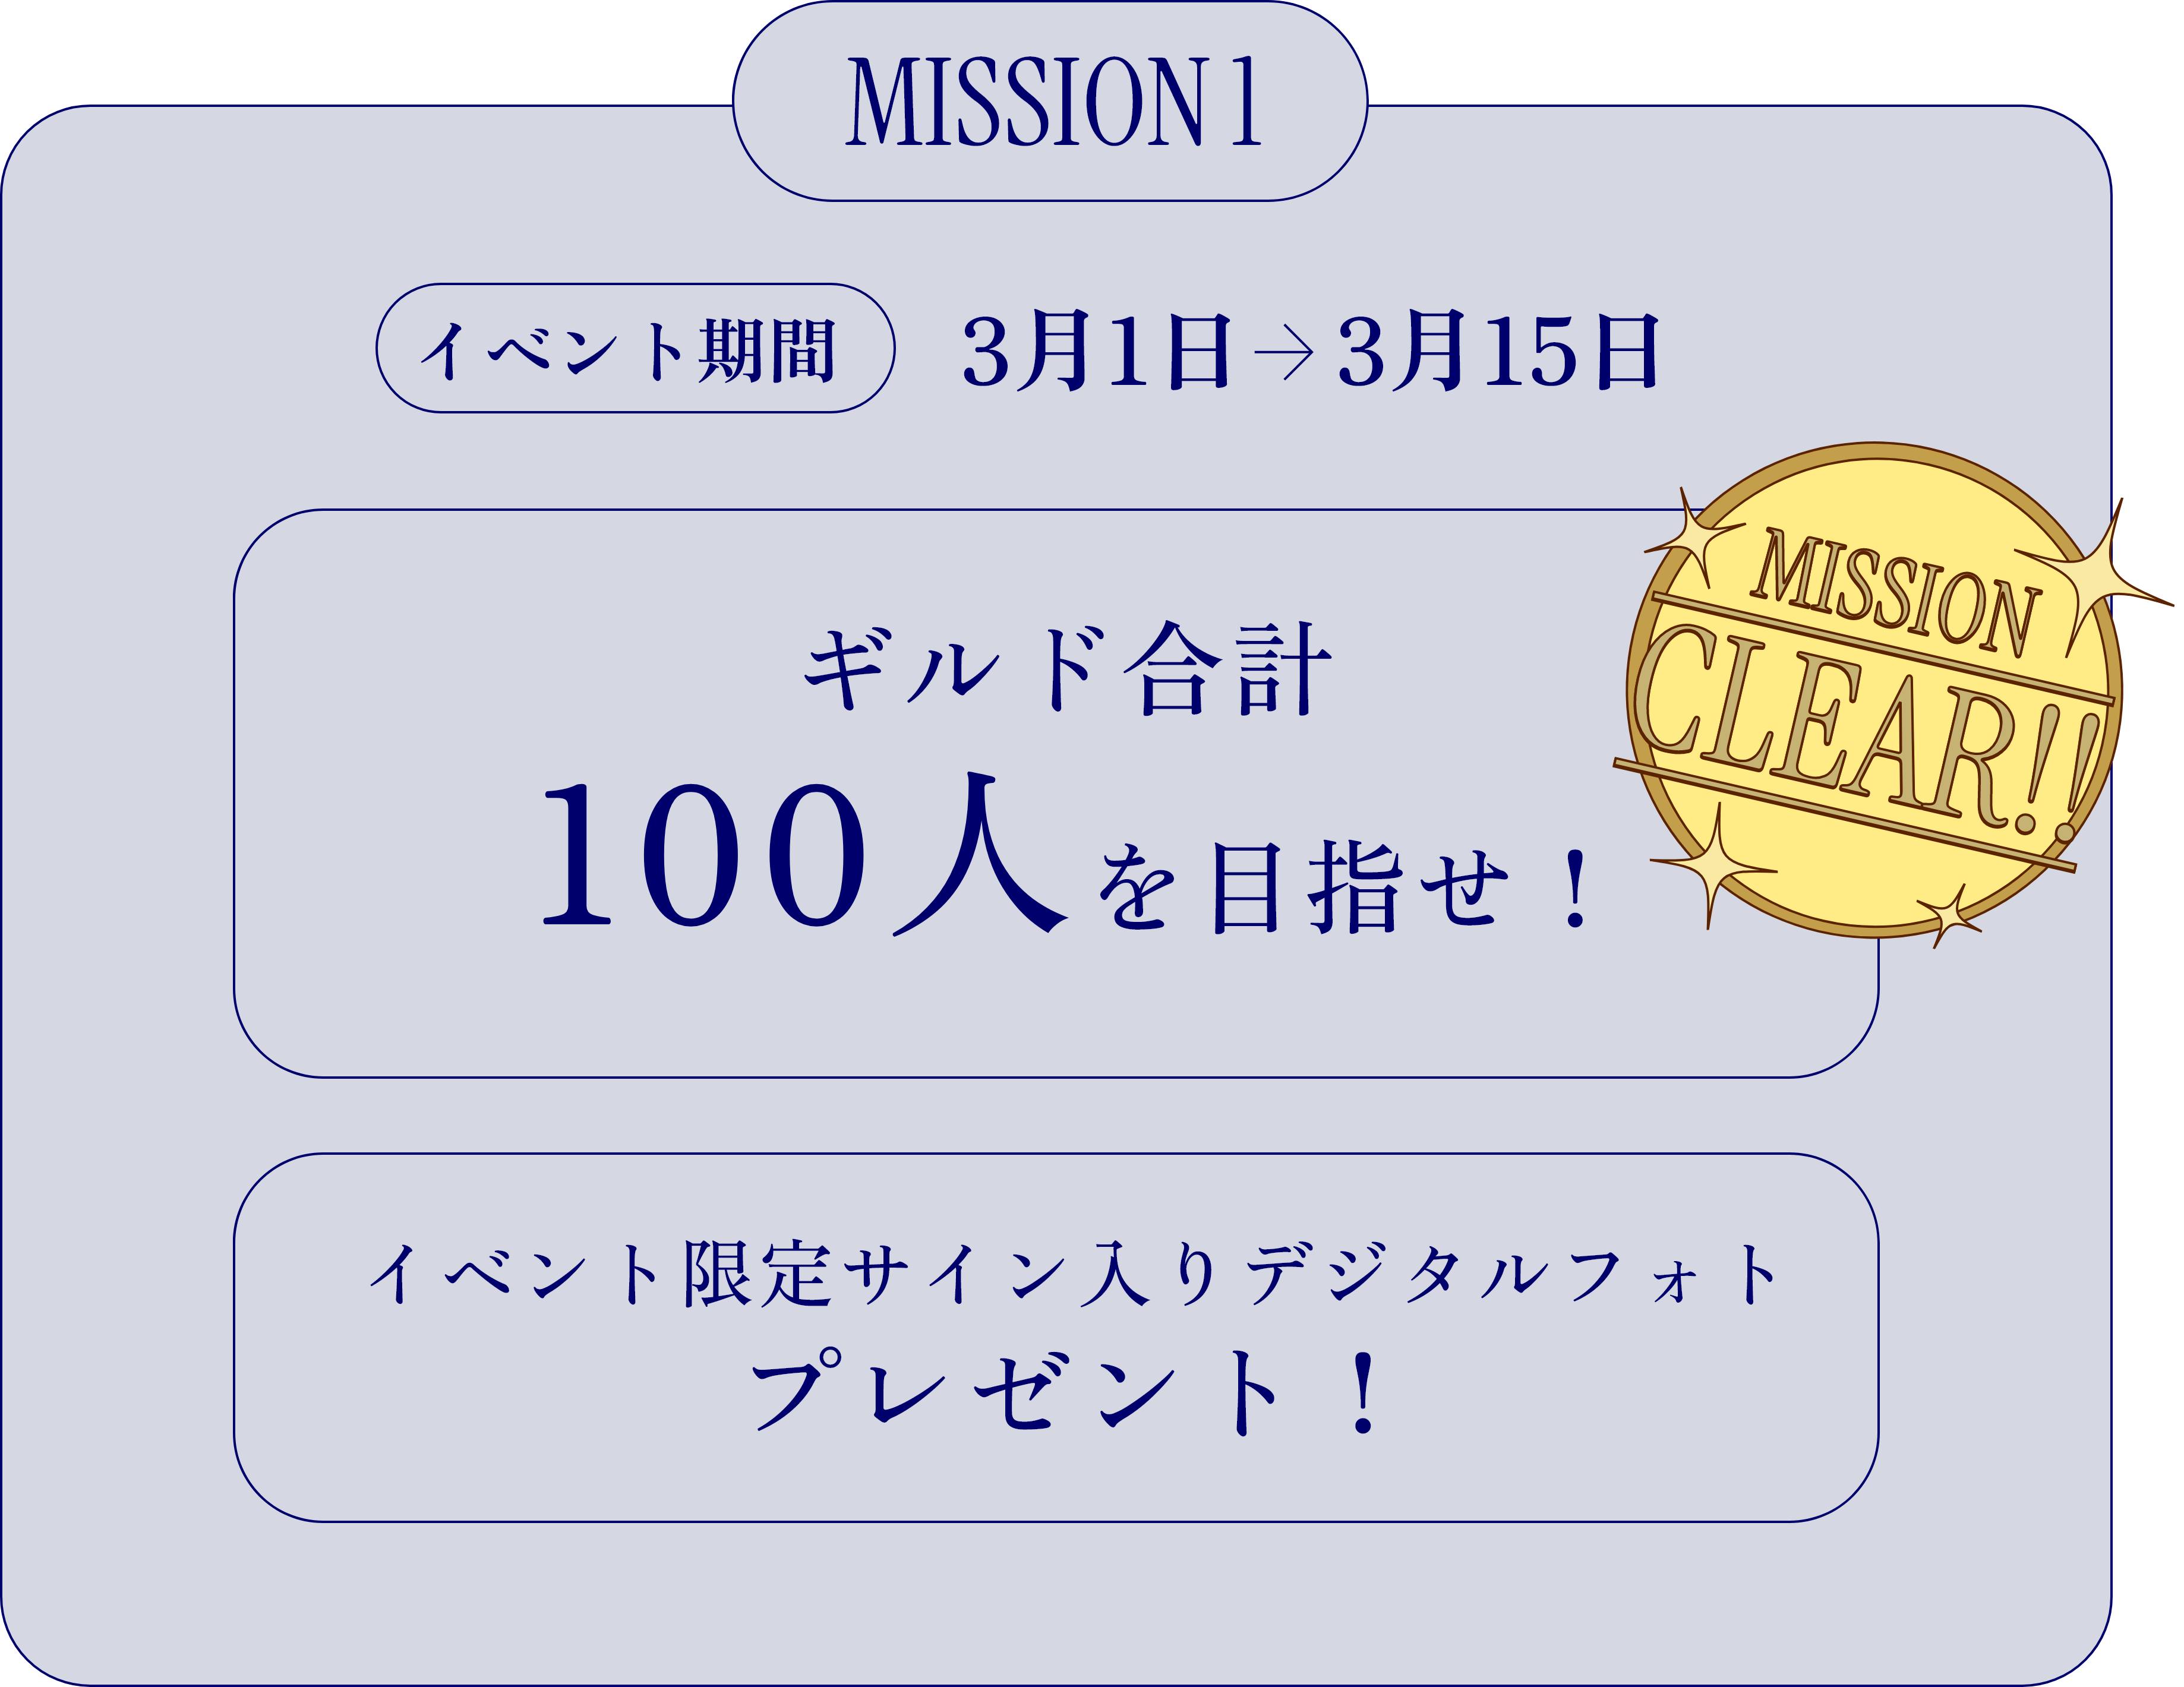 MISSION 1